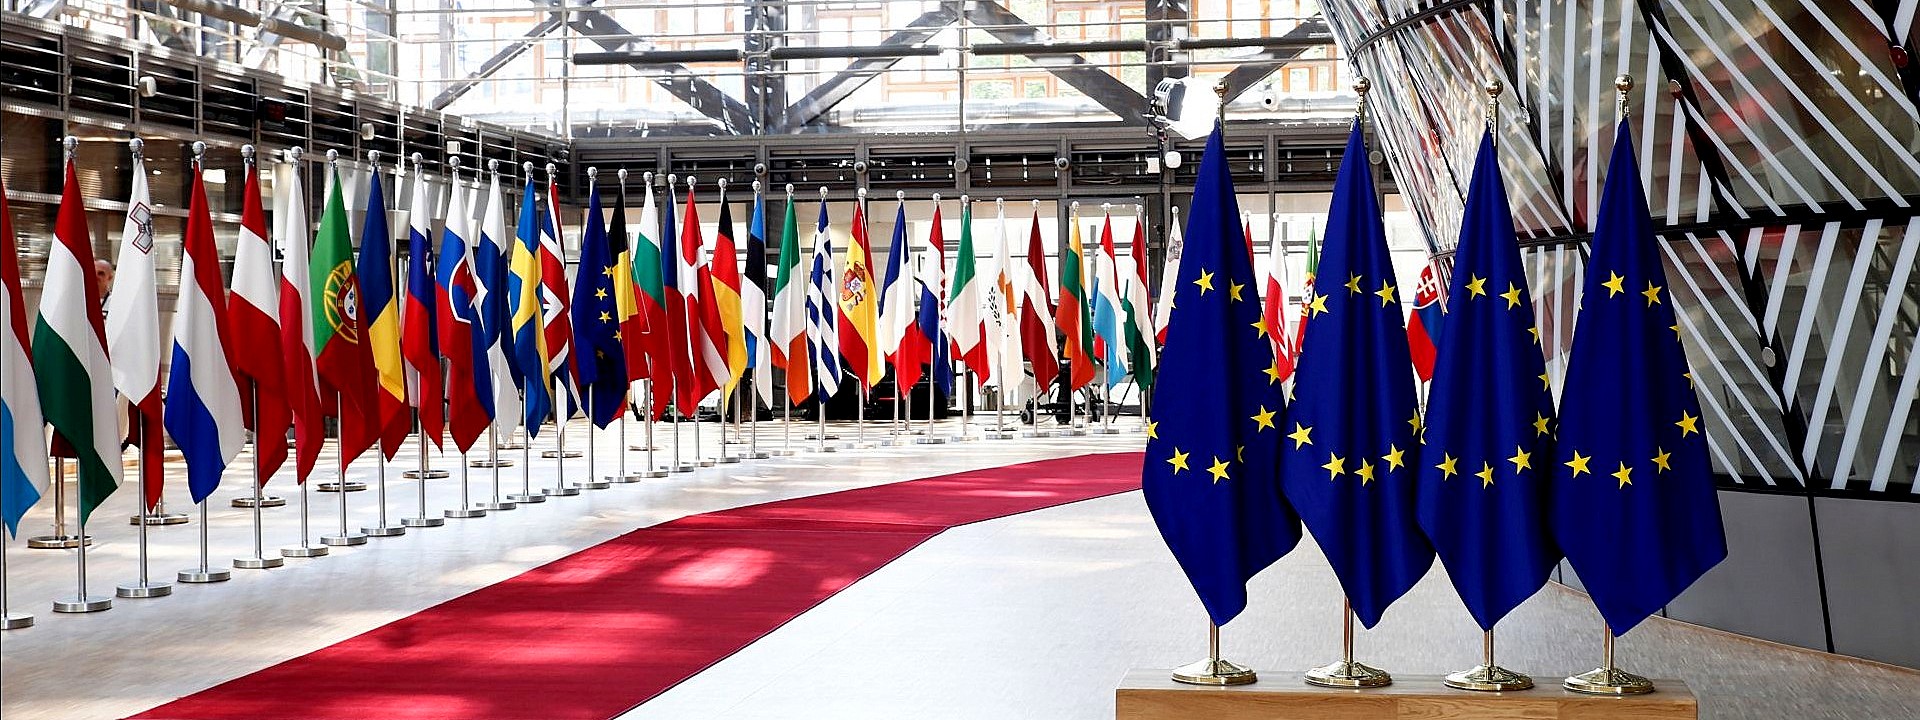 Elezioni europee, la Cisl lancia un invito e un auspicio: “Andiamo a votare per un’Unione più giusta e sociale”